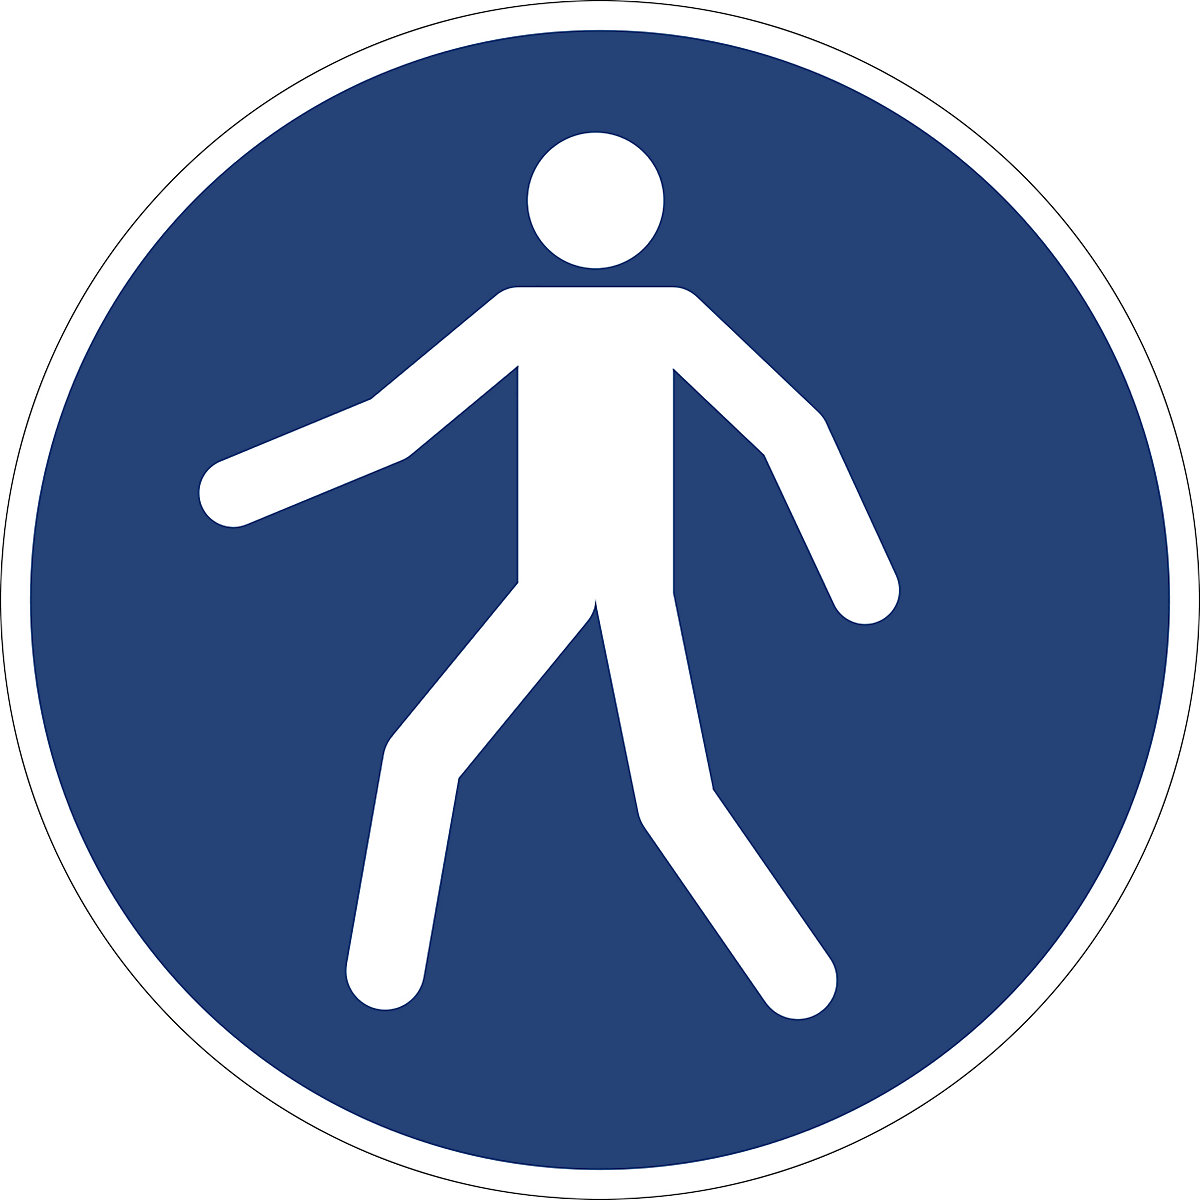 Příkazová značka, Použijte cestu pro chodce, bal.j. 10 ks, plast, Ø 200 mm